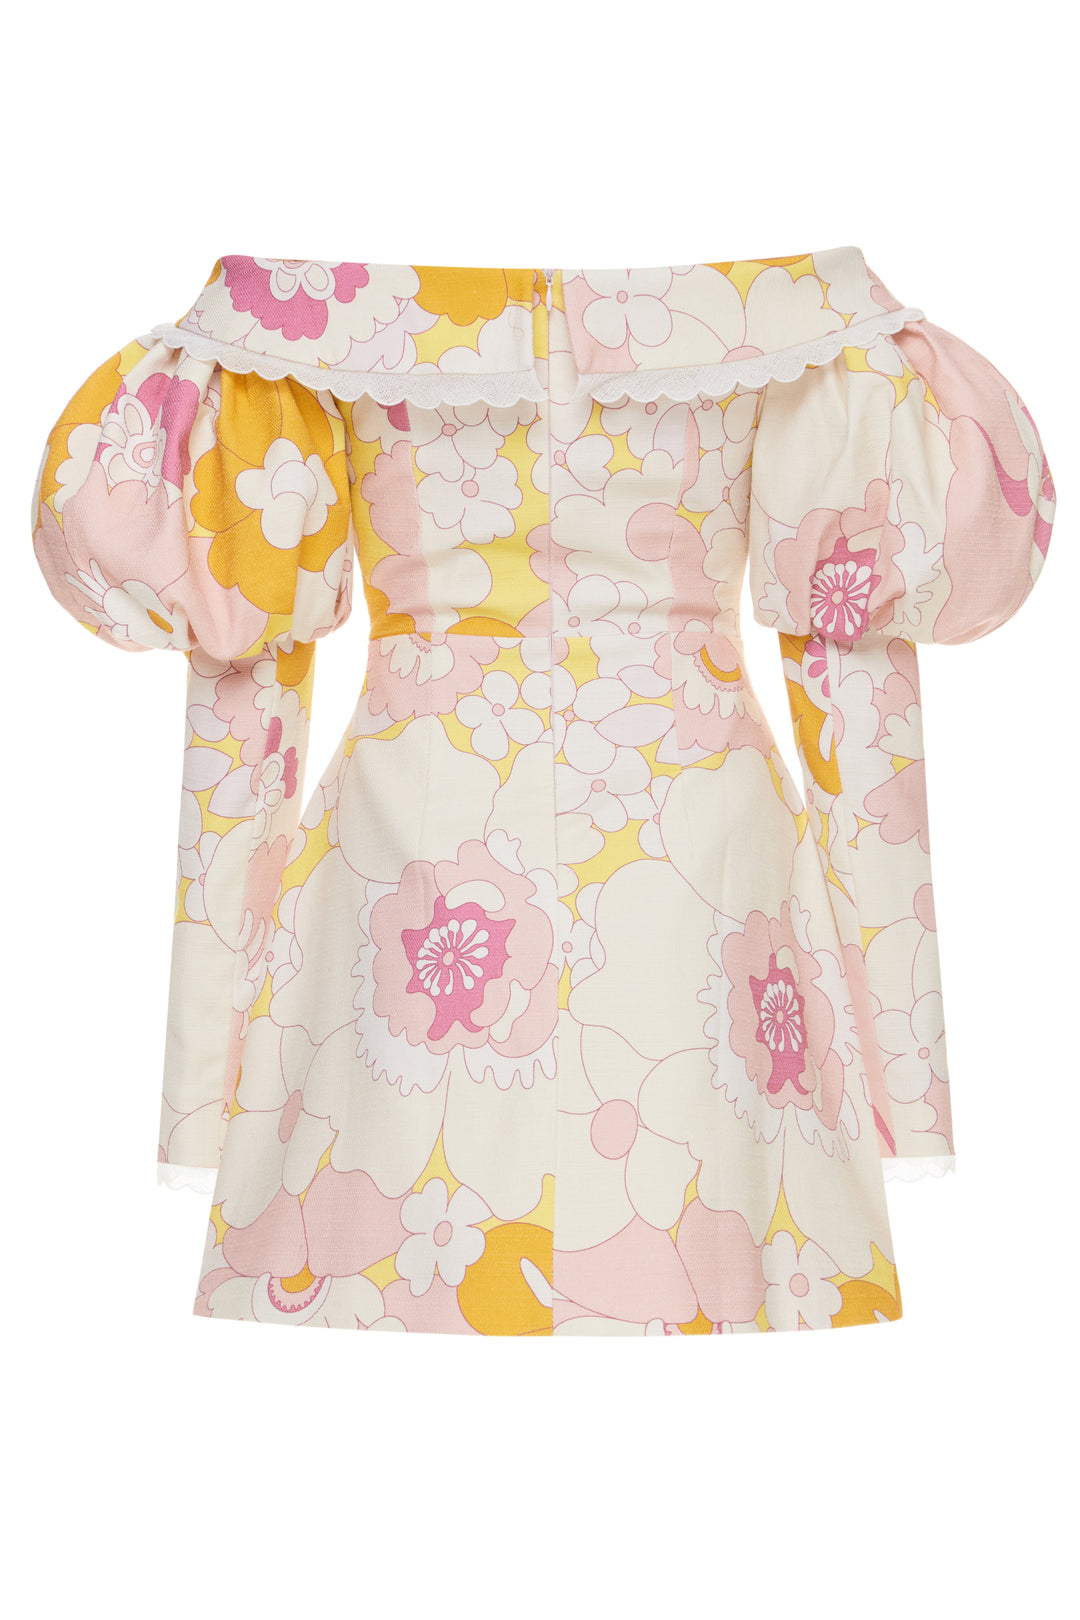 Bohemian floral-print jacket-dress